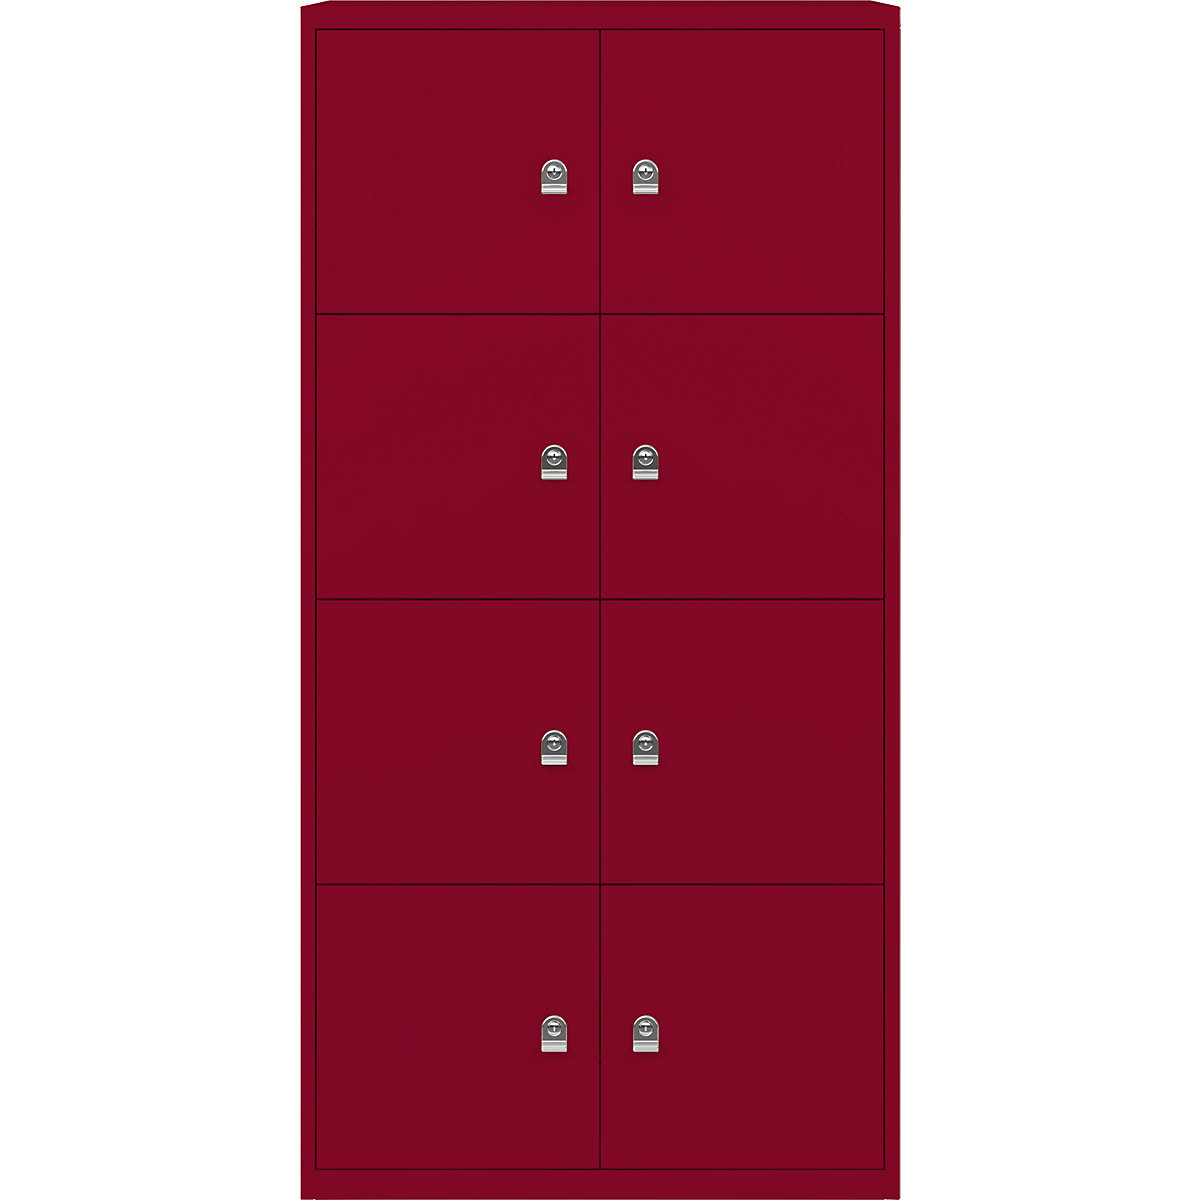 Armadietto LateralFile™ – BISLEY, con 8 scomparti con serratura, altezza 375 mm ciascuno, rosso cardinale-25